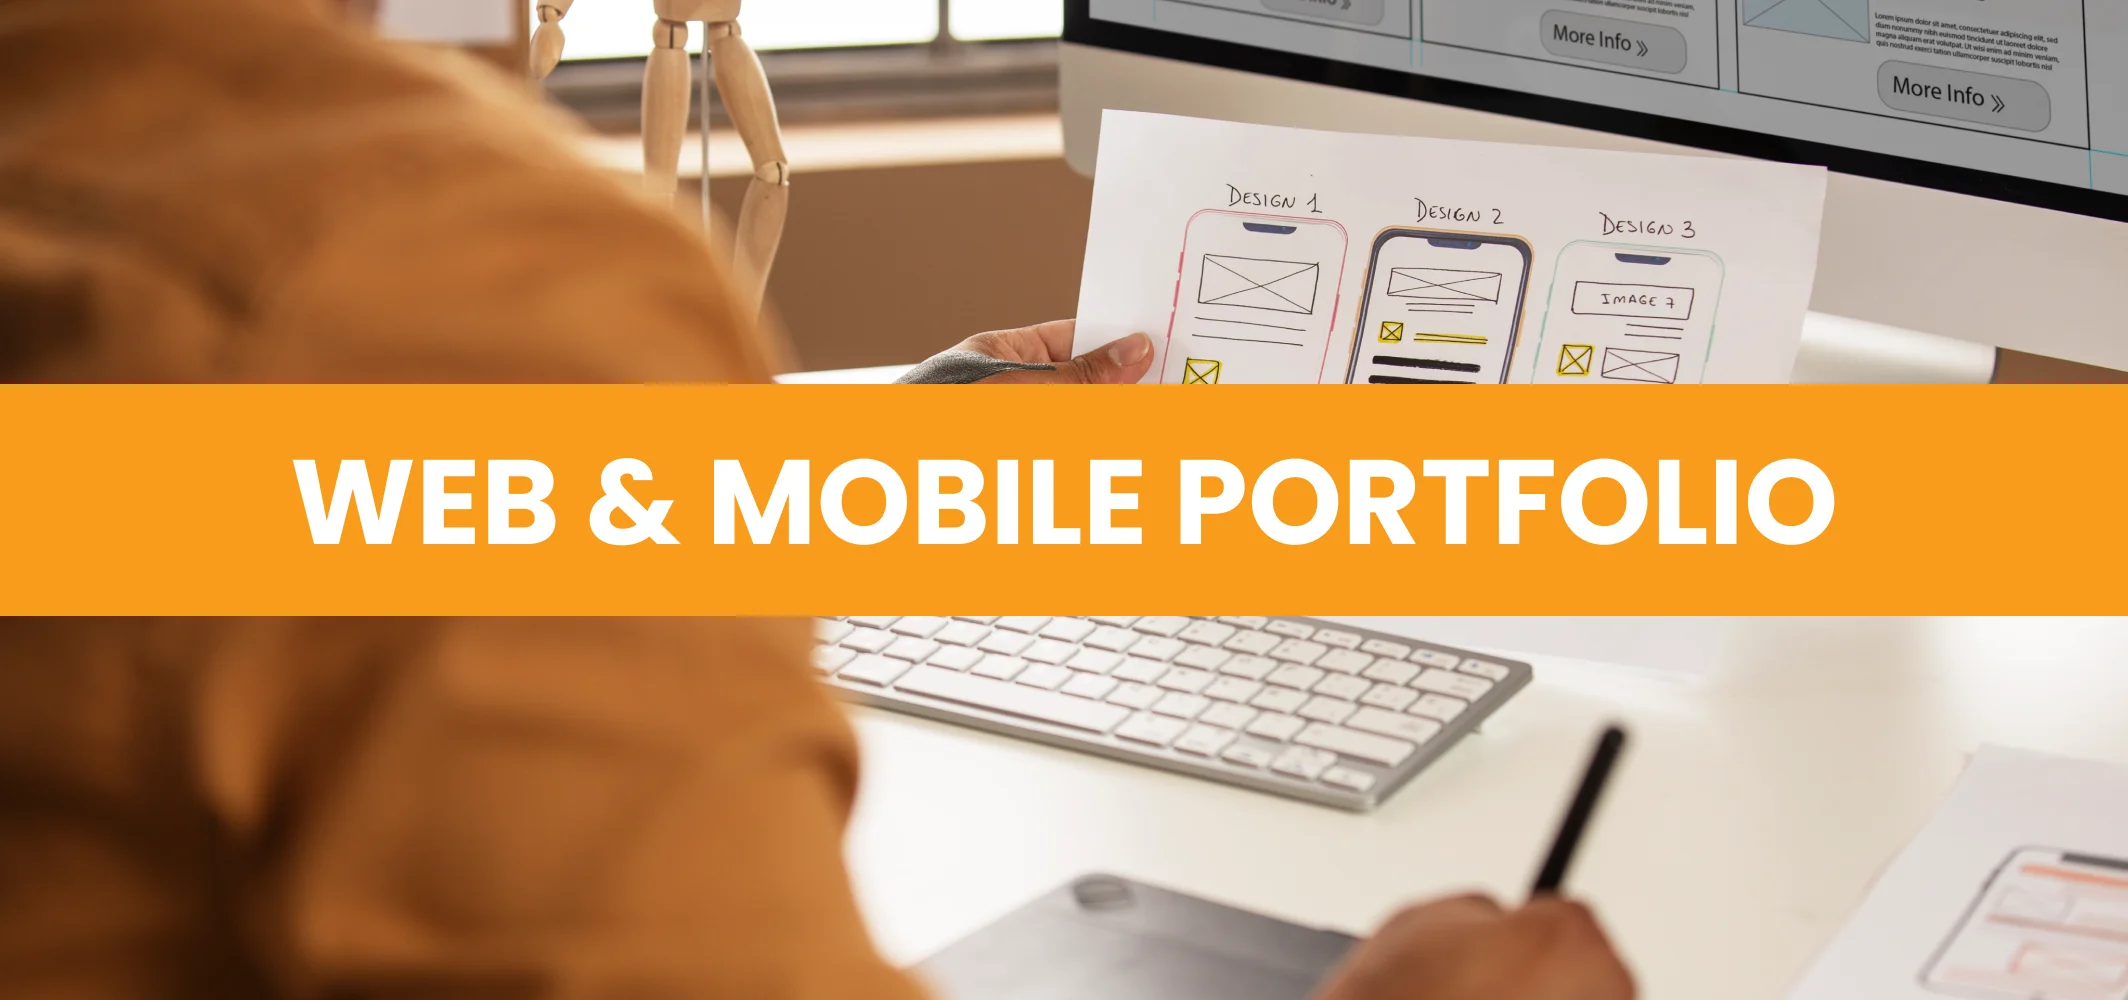 Web & Mobile Portfolio